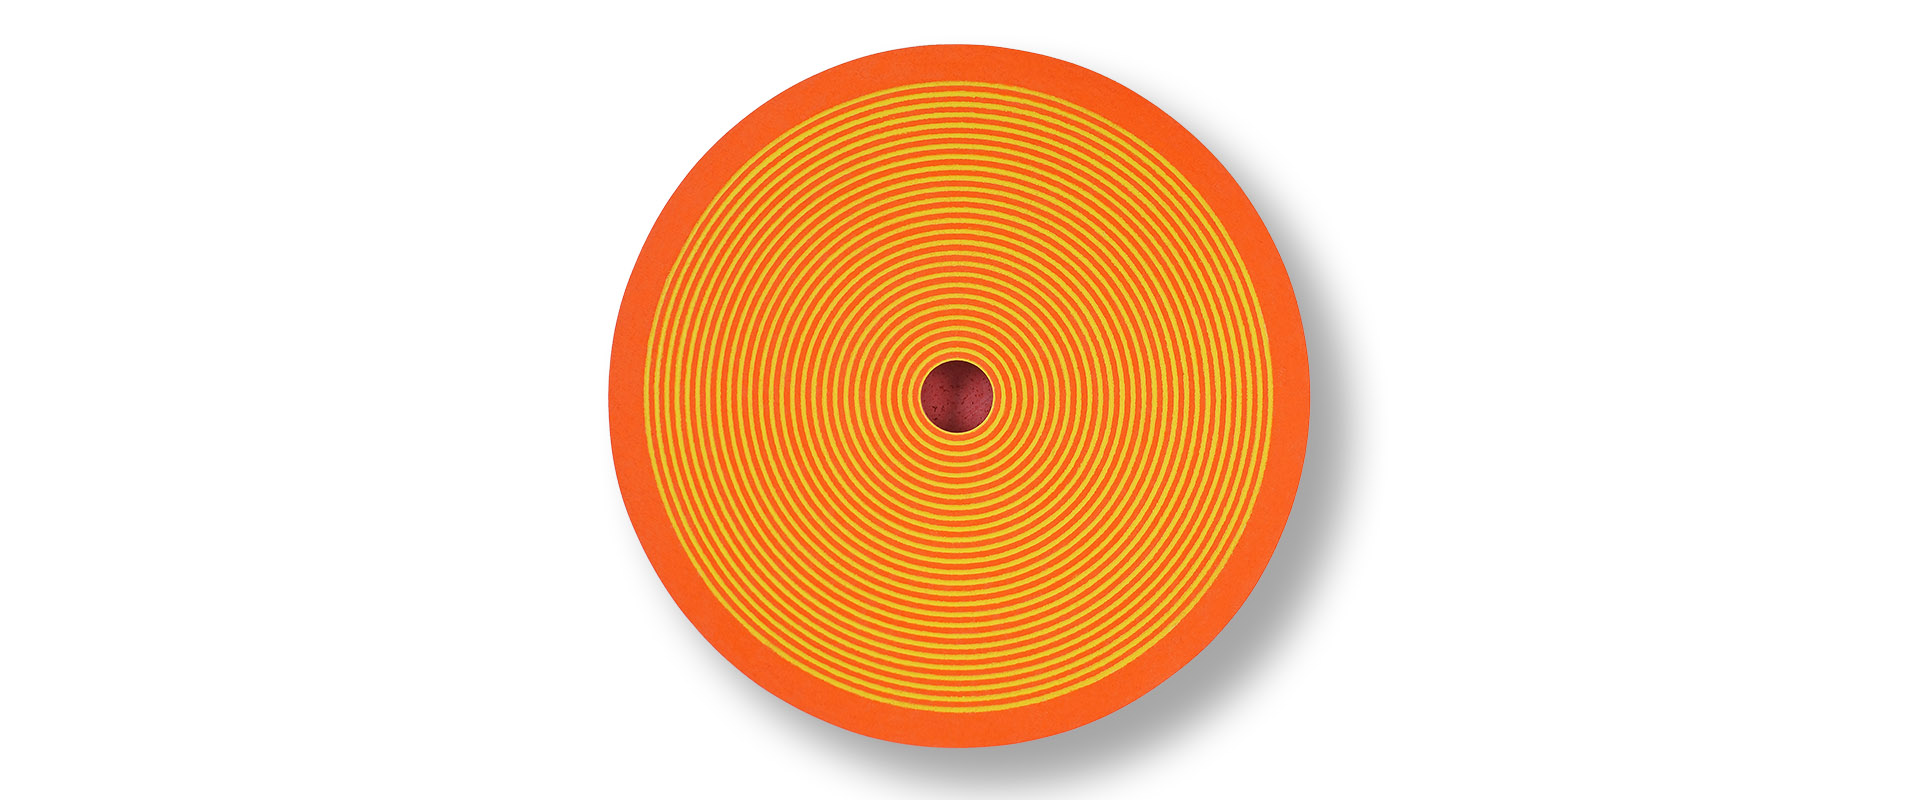 Struktur radial II - August 2017, Orange, Gelb, Durchmesser 72 x 5,5 cm